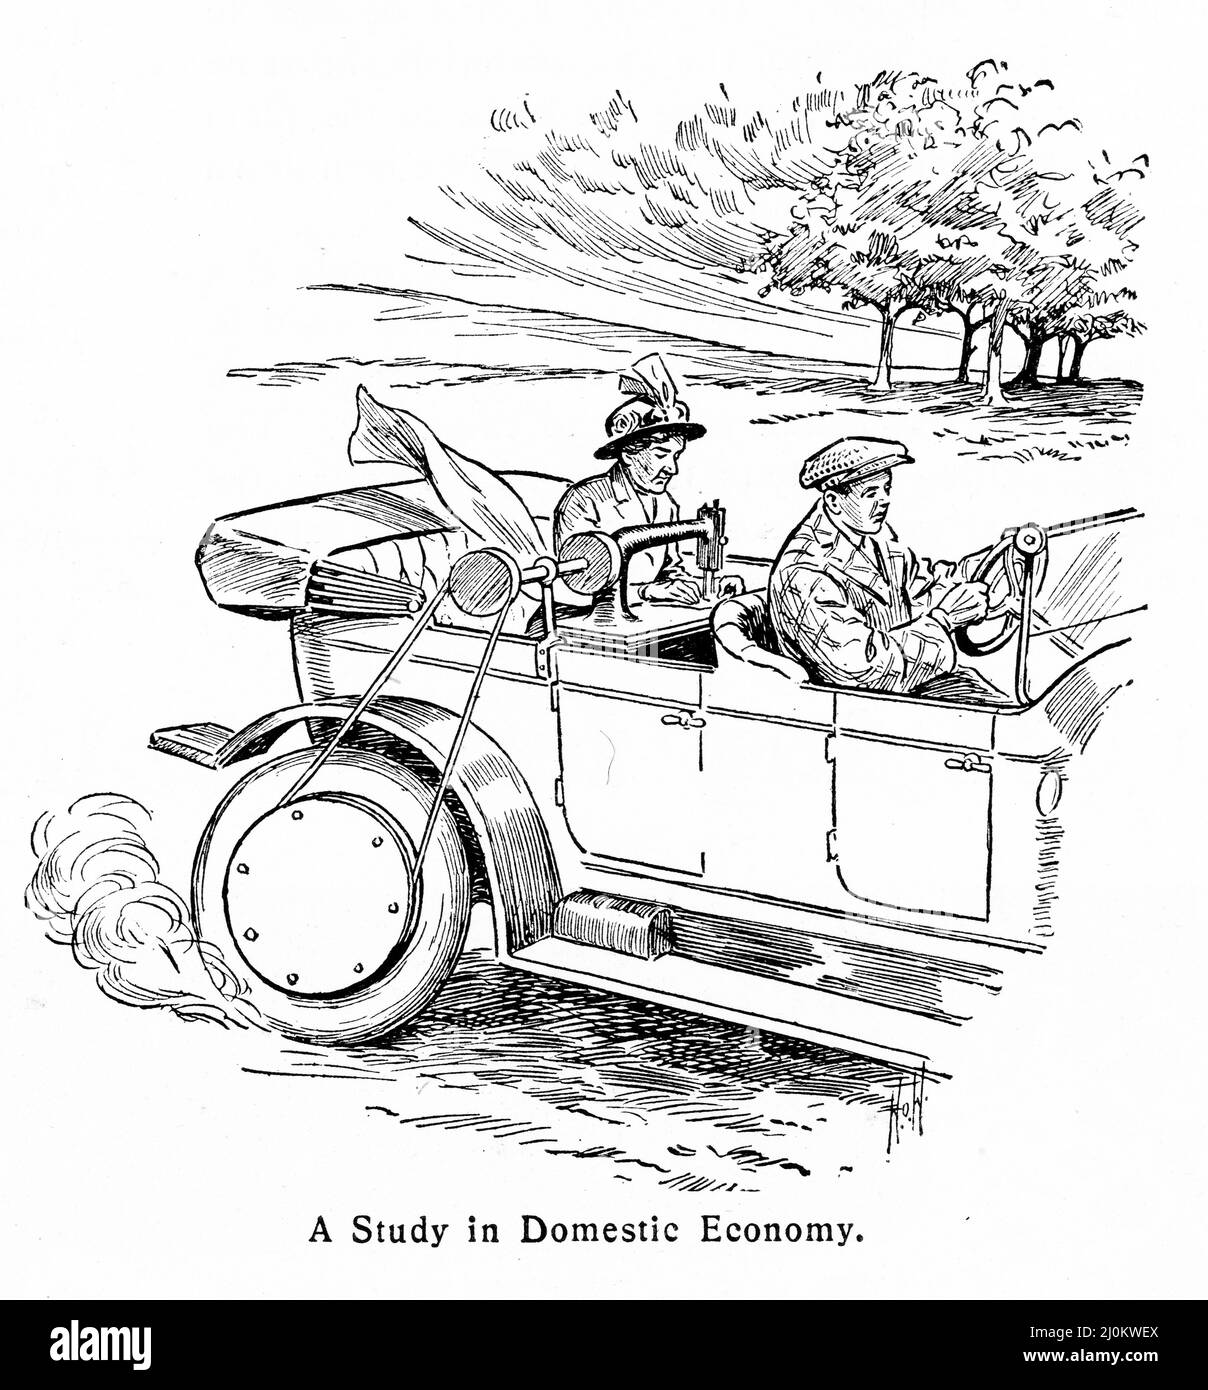 Gravure d'une femme qui coudre à l'arrière de la voiture avec la machine entraînée sur une ceinture de la roue de la voiture. Du magazine Punch vers 1914. Banque D'Images